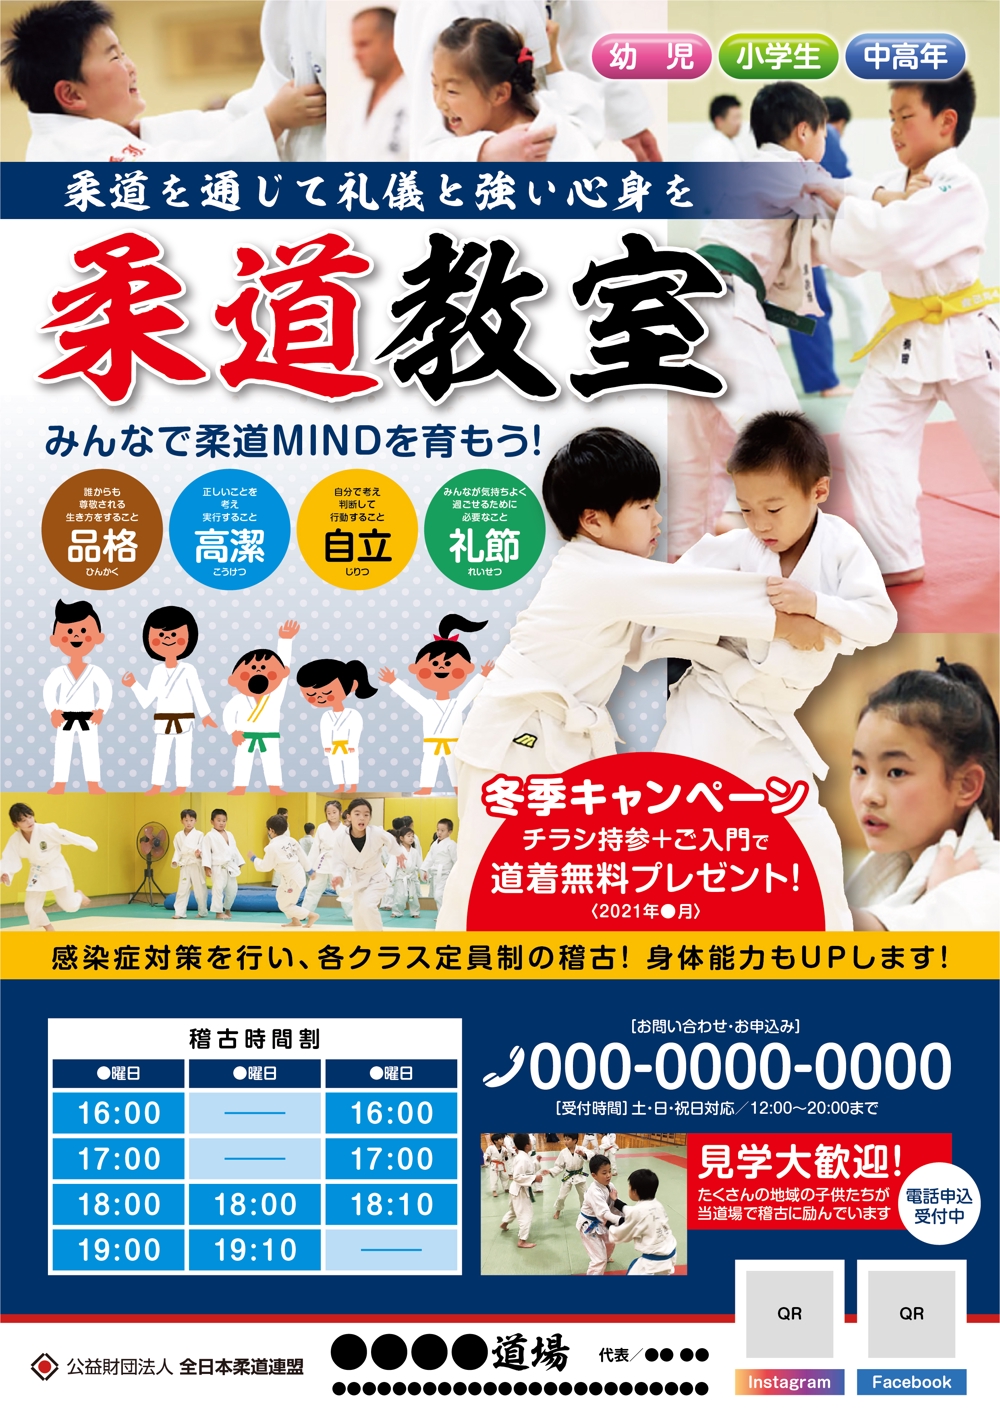 A4_judo_01.jpg